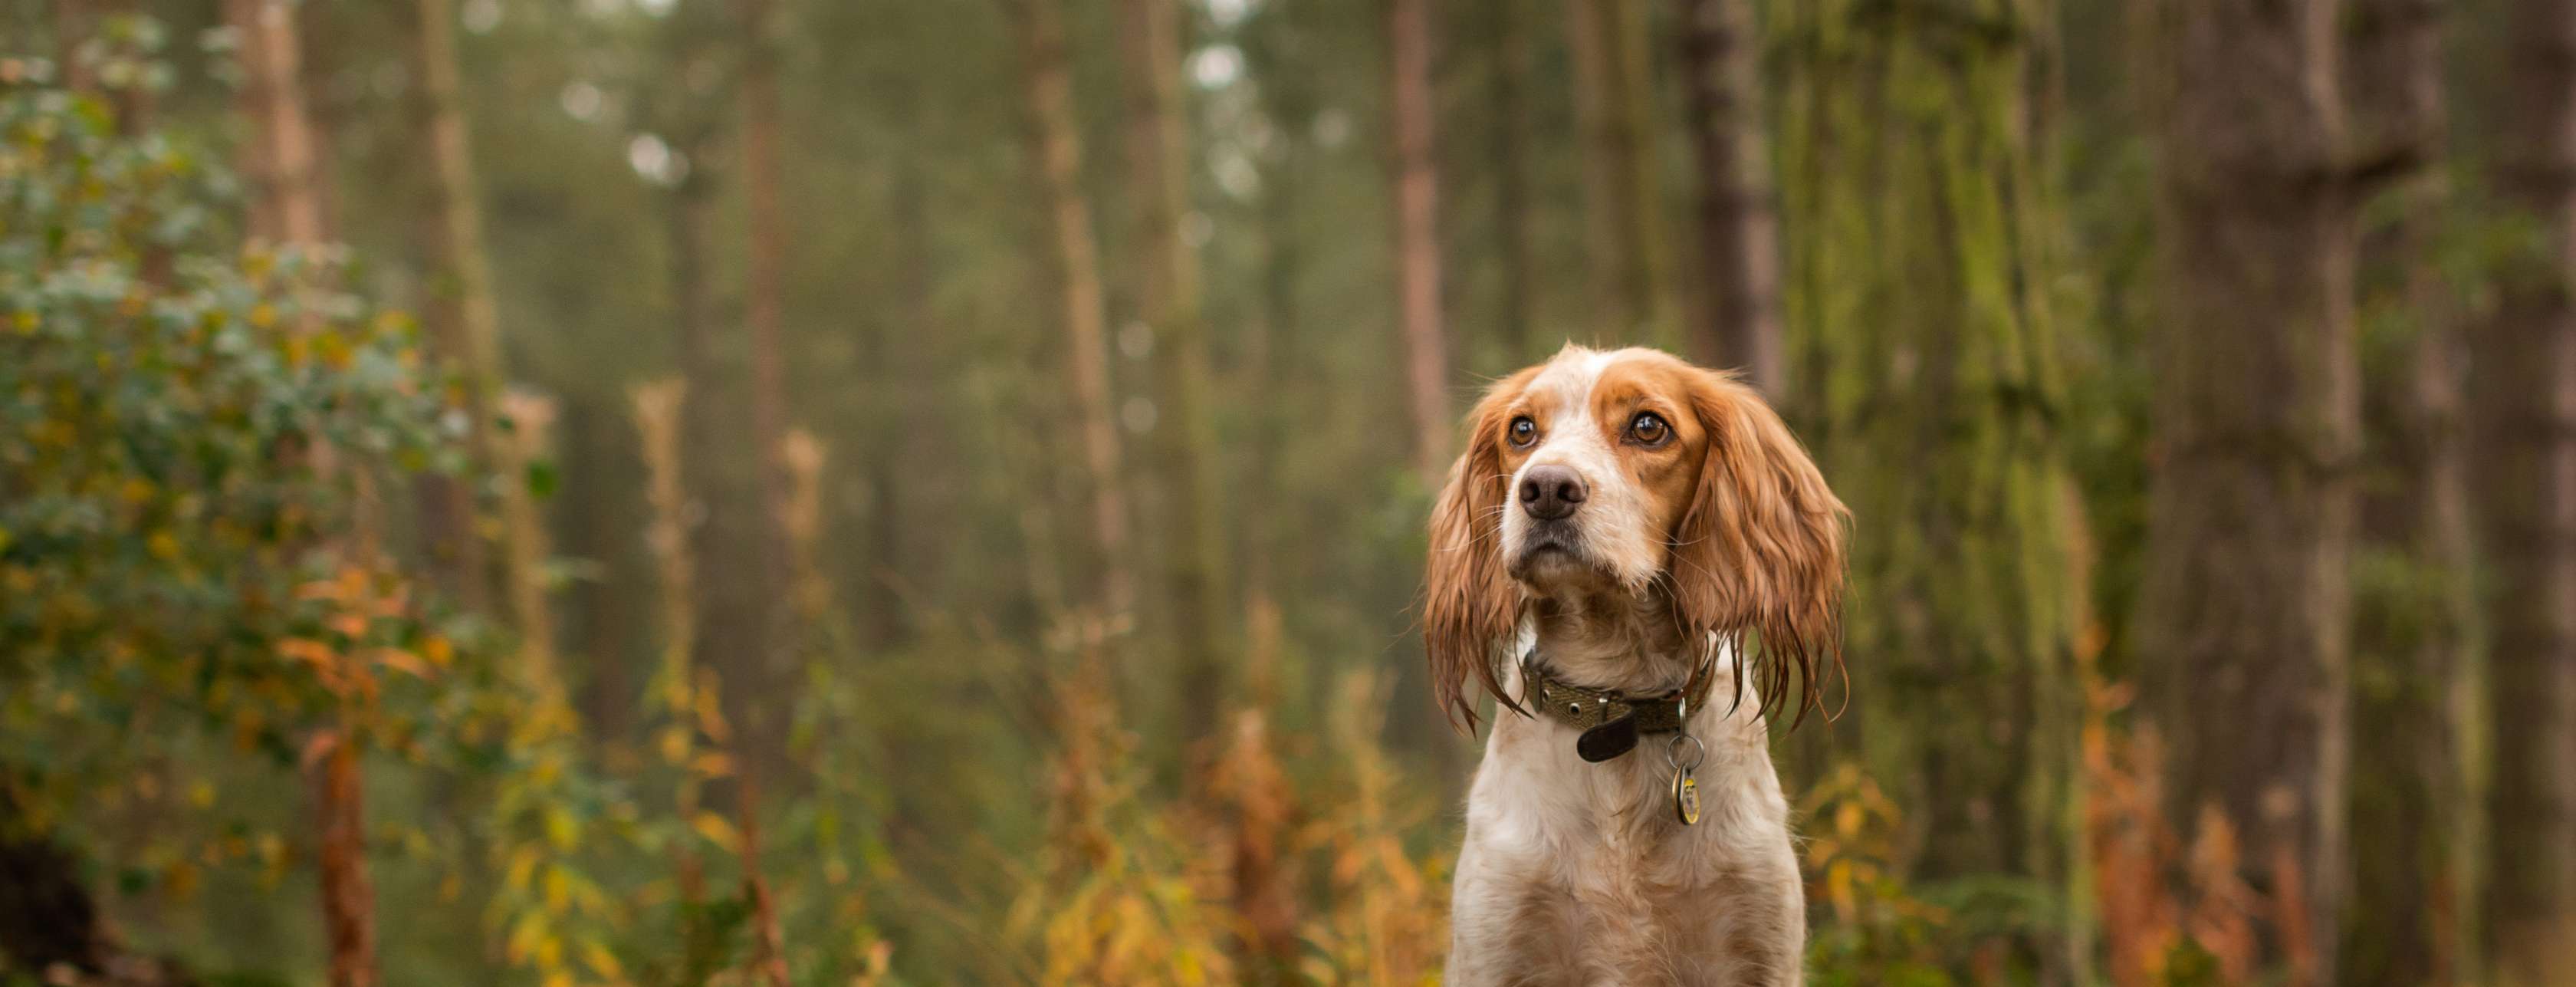 Jagdhund versichern: Ein Jagdhund steht auf einem Baumstumpf im Wald